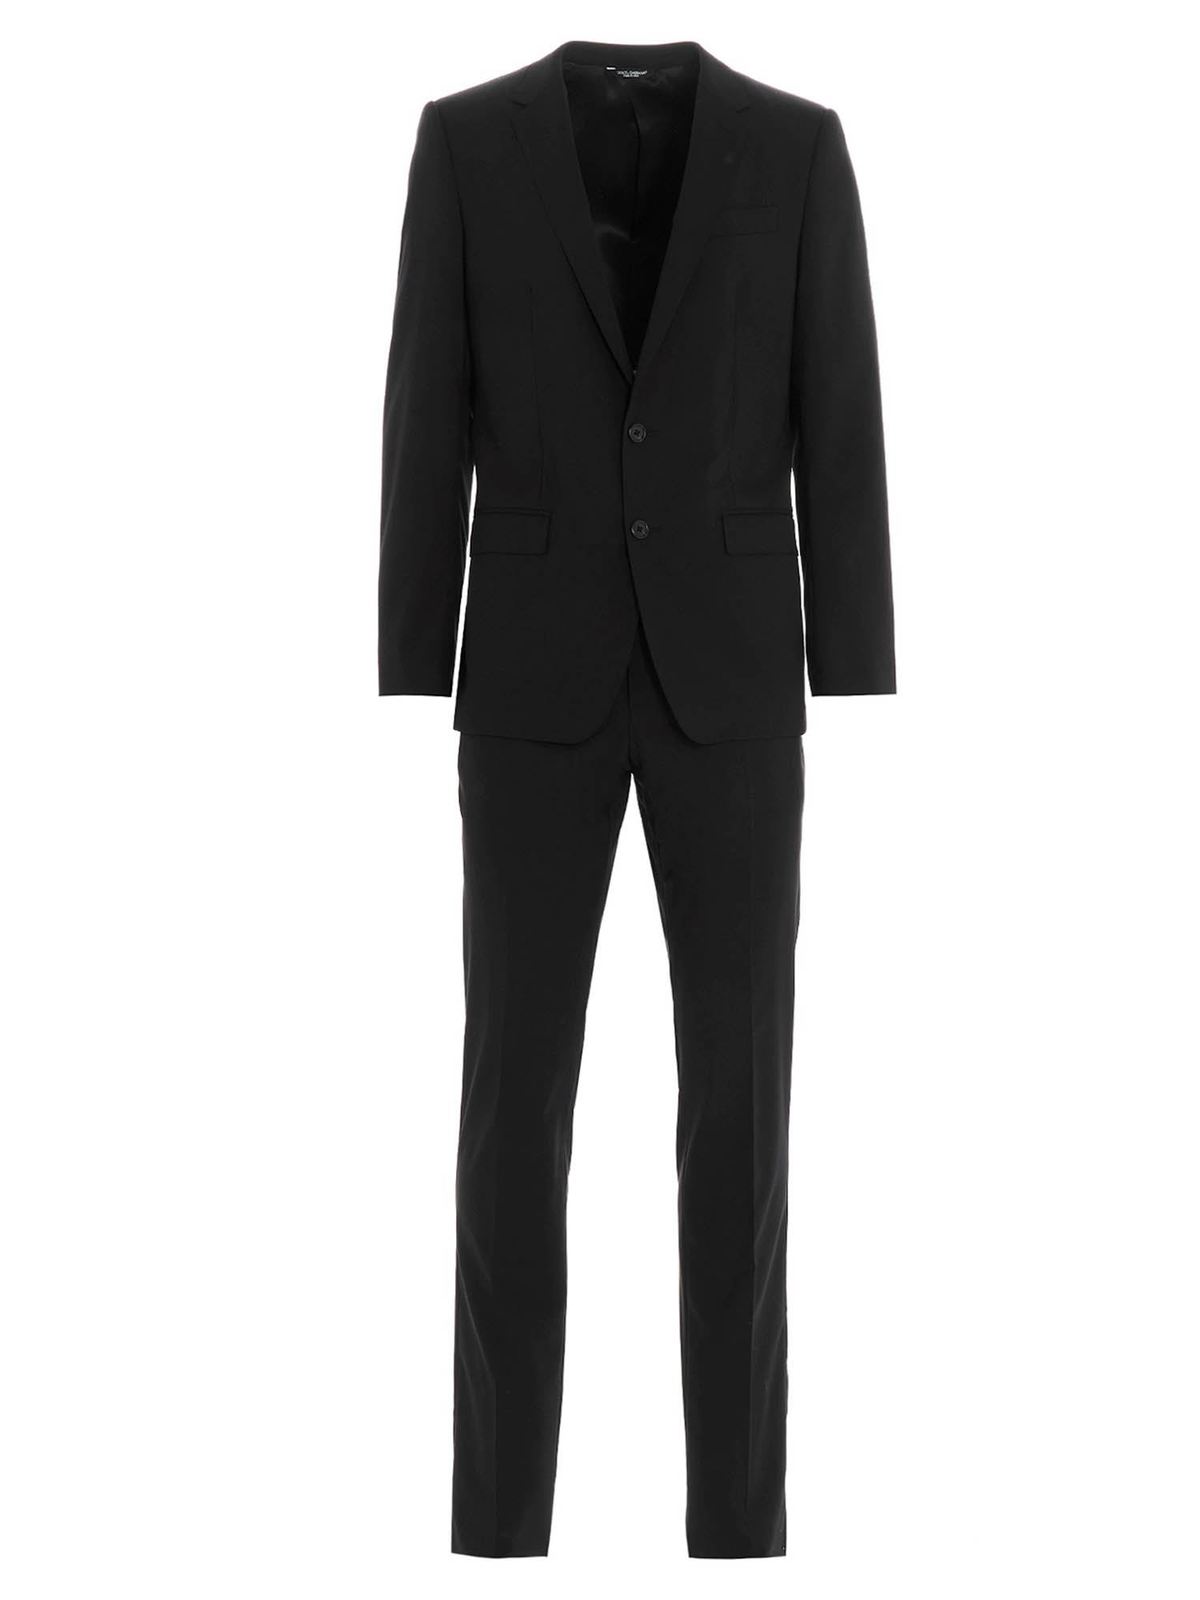 Dolce & Gabbana - Martini suit in black - formal suits - GK0EMTGEN97N0000